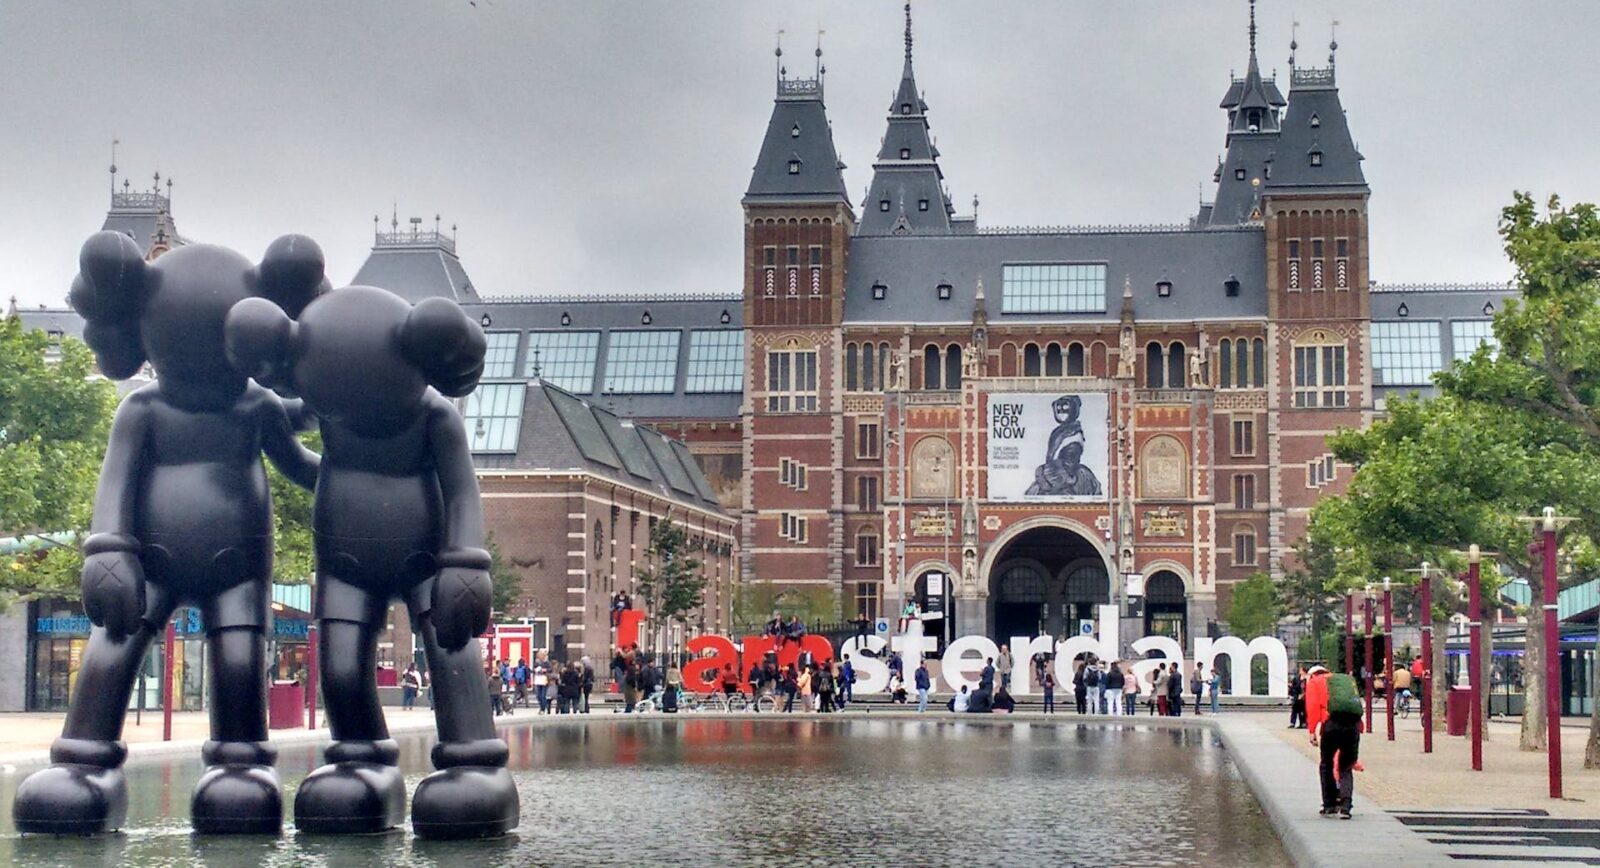 Αξιοθέατα φιλικά προς τον προϋπολογισμό στο Άμστερνταμ: Εξερευνήστε την πόλη με λιγότερα από 100 €